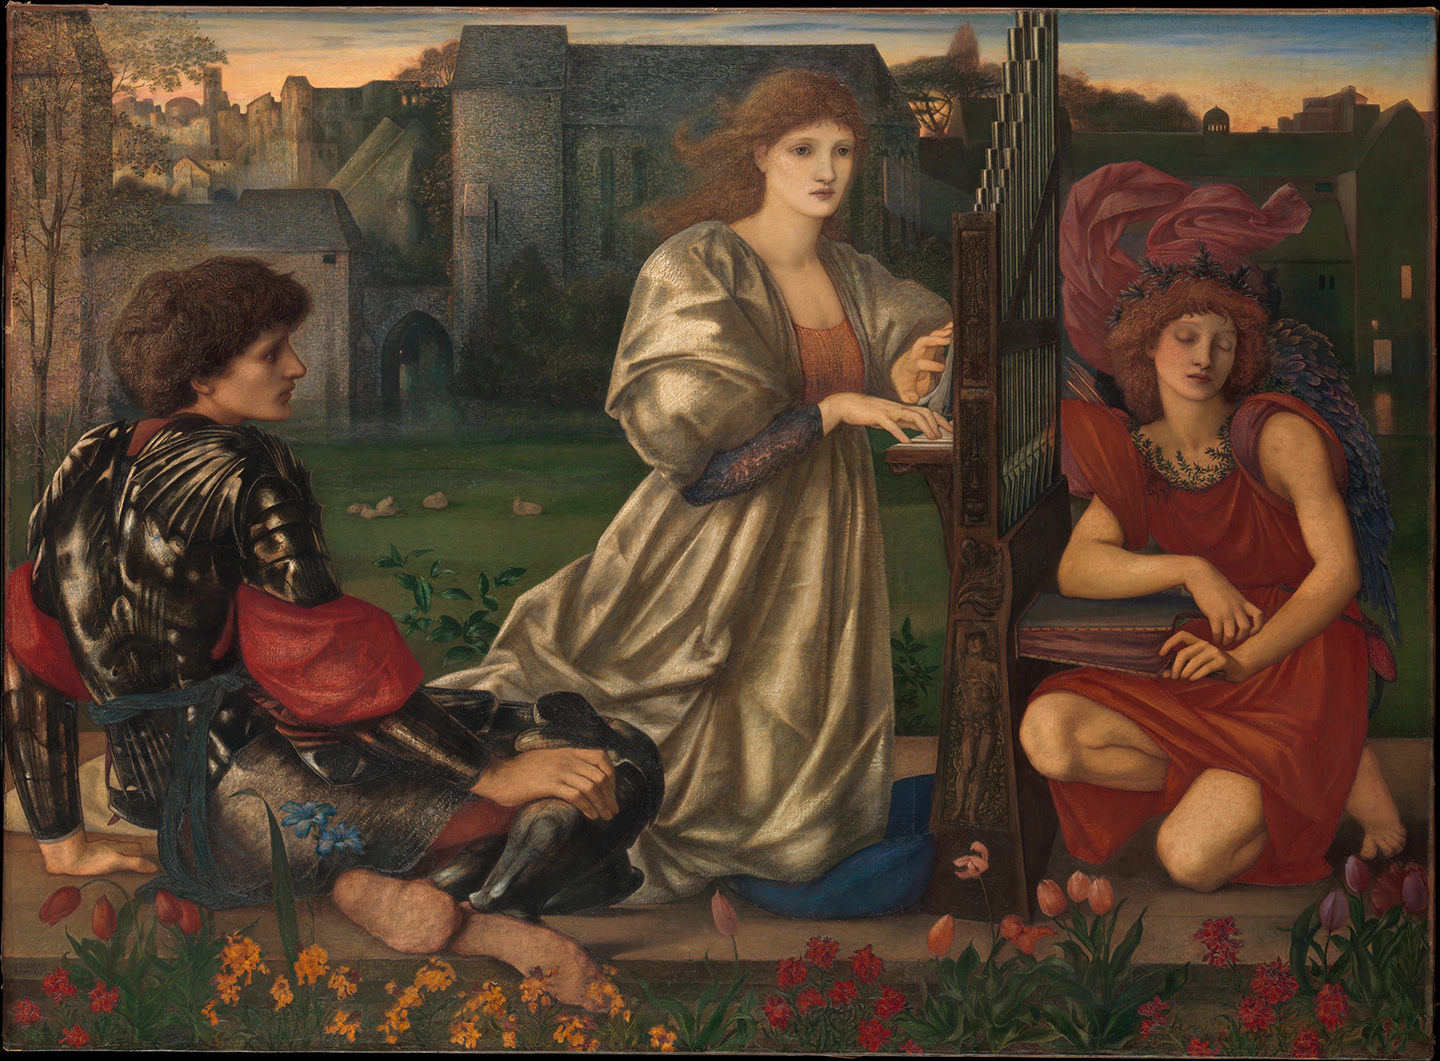 Bức họa “The Love Song” (Bản tình ca) của Ngài Edward Burne-Jones, năm 1868-77. Tranh sơn dầu trên vải canvas. Viện Bảo tàng Nghệ thuật Metropolitan, thành phố New York. (Ảnh: Tài sản công)